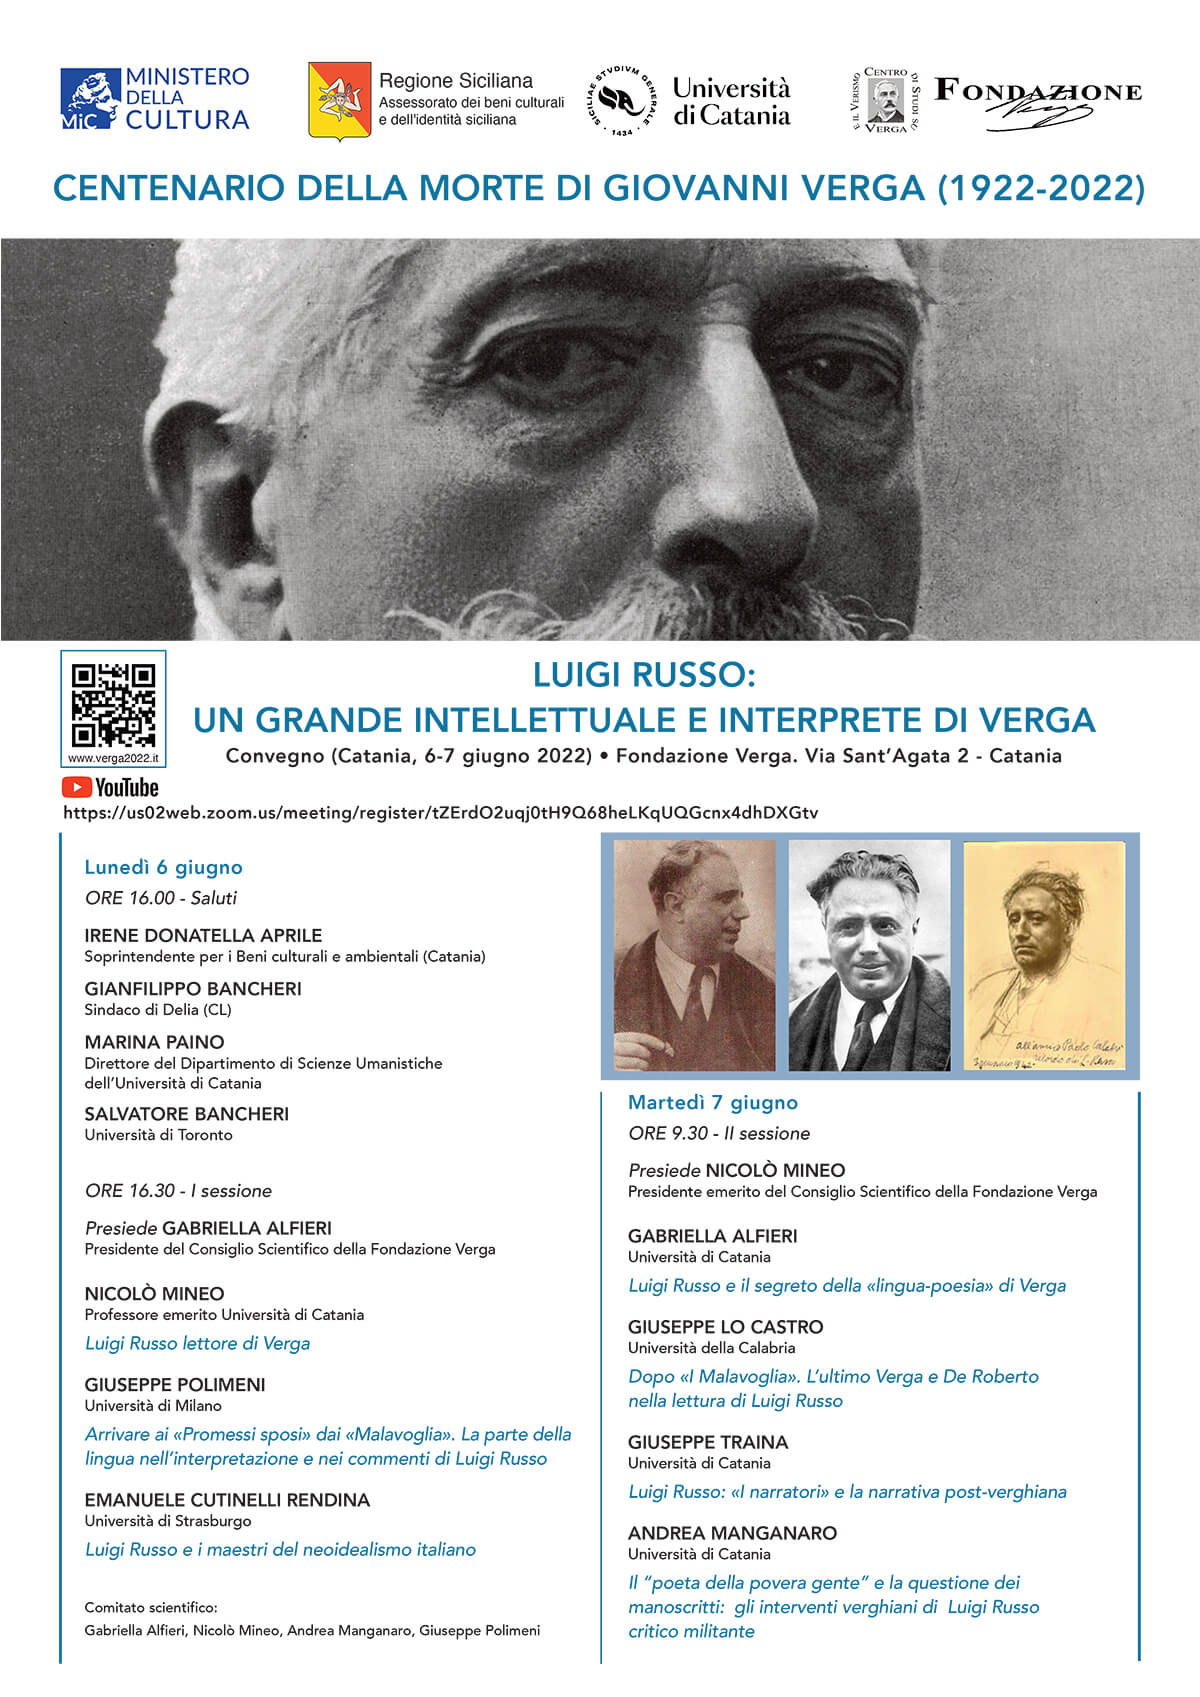 Luigi Russo: un grande critico siciliano, autore della prima monografia di Verga